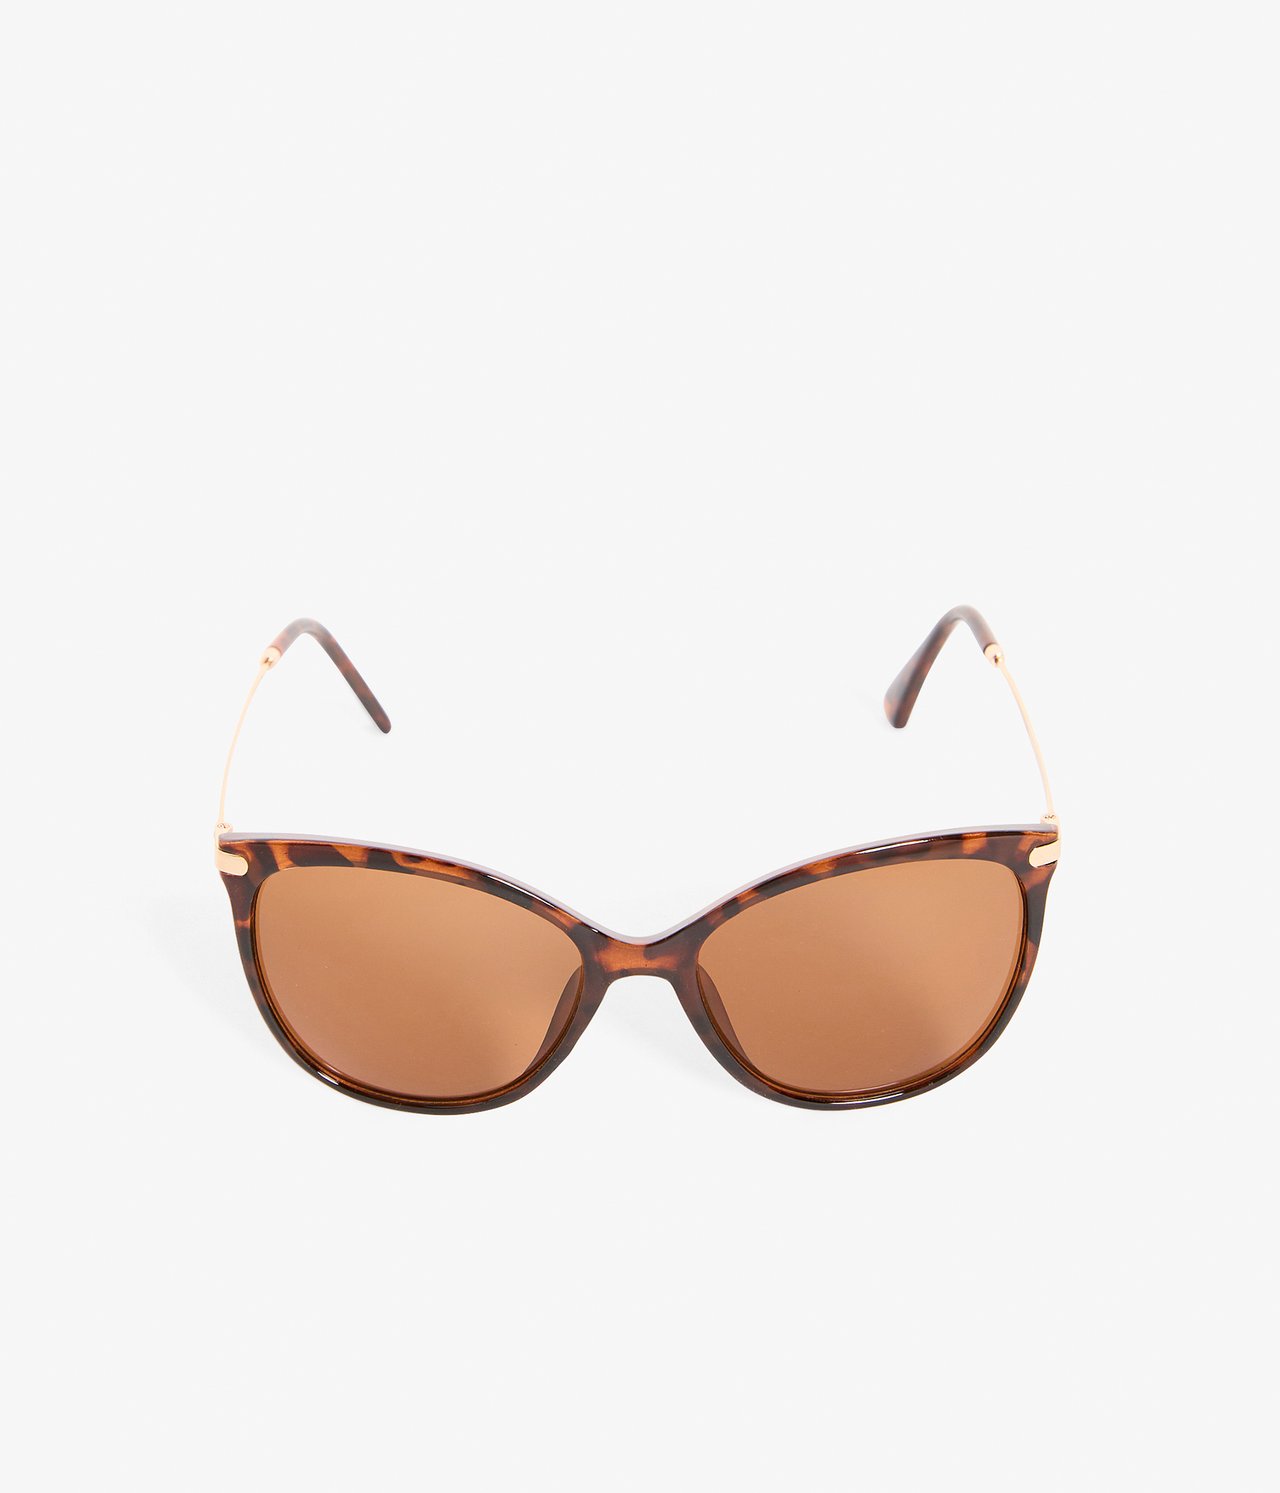 Okulary przeciwsłoneczne damskie - Brązowy - 1